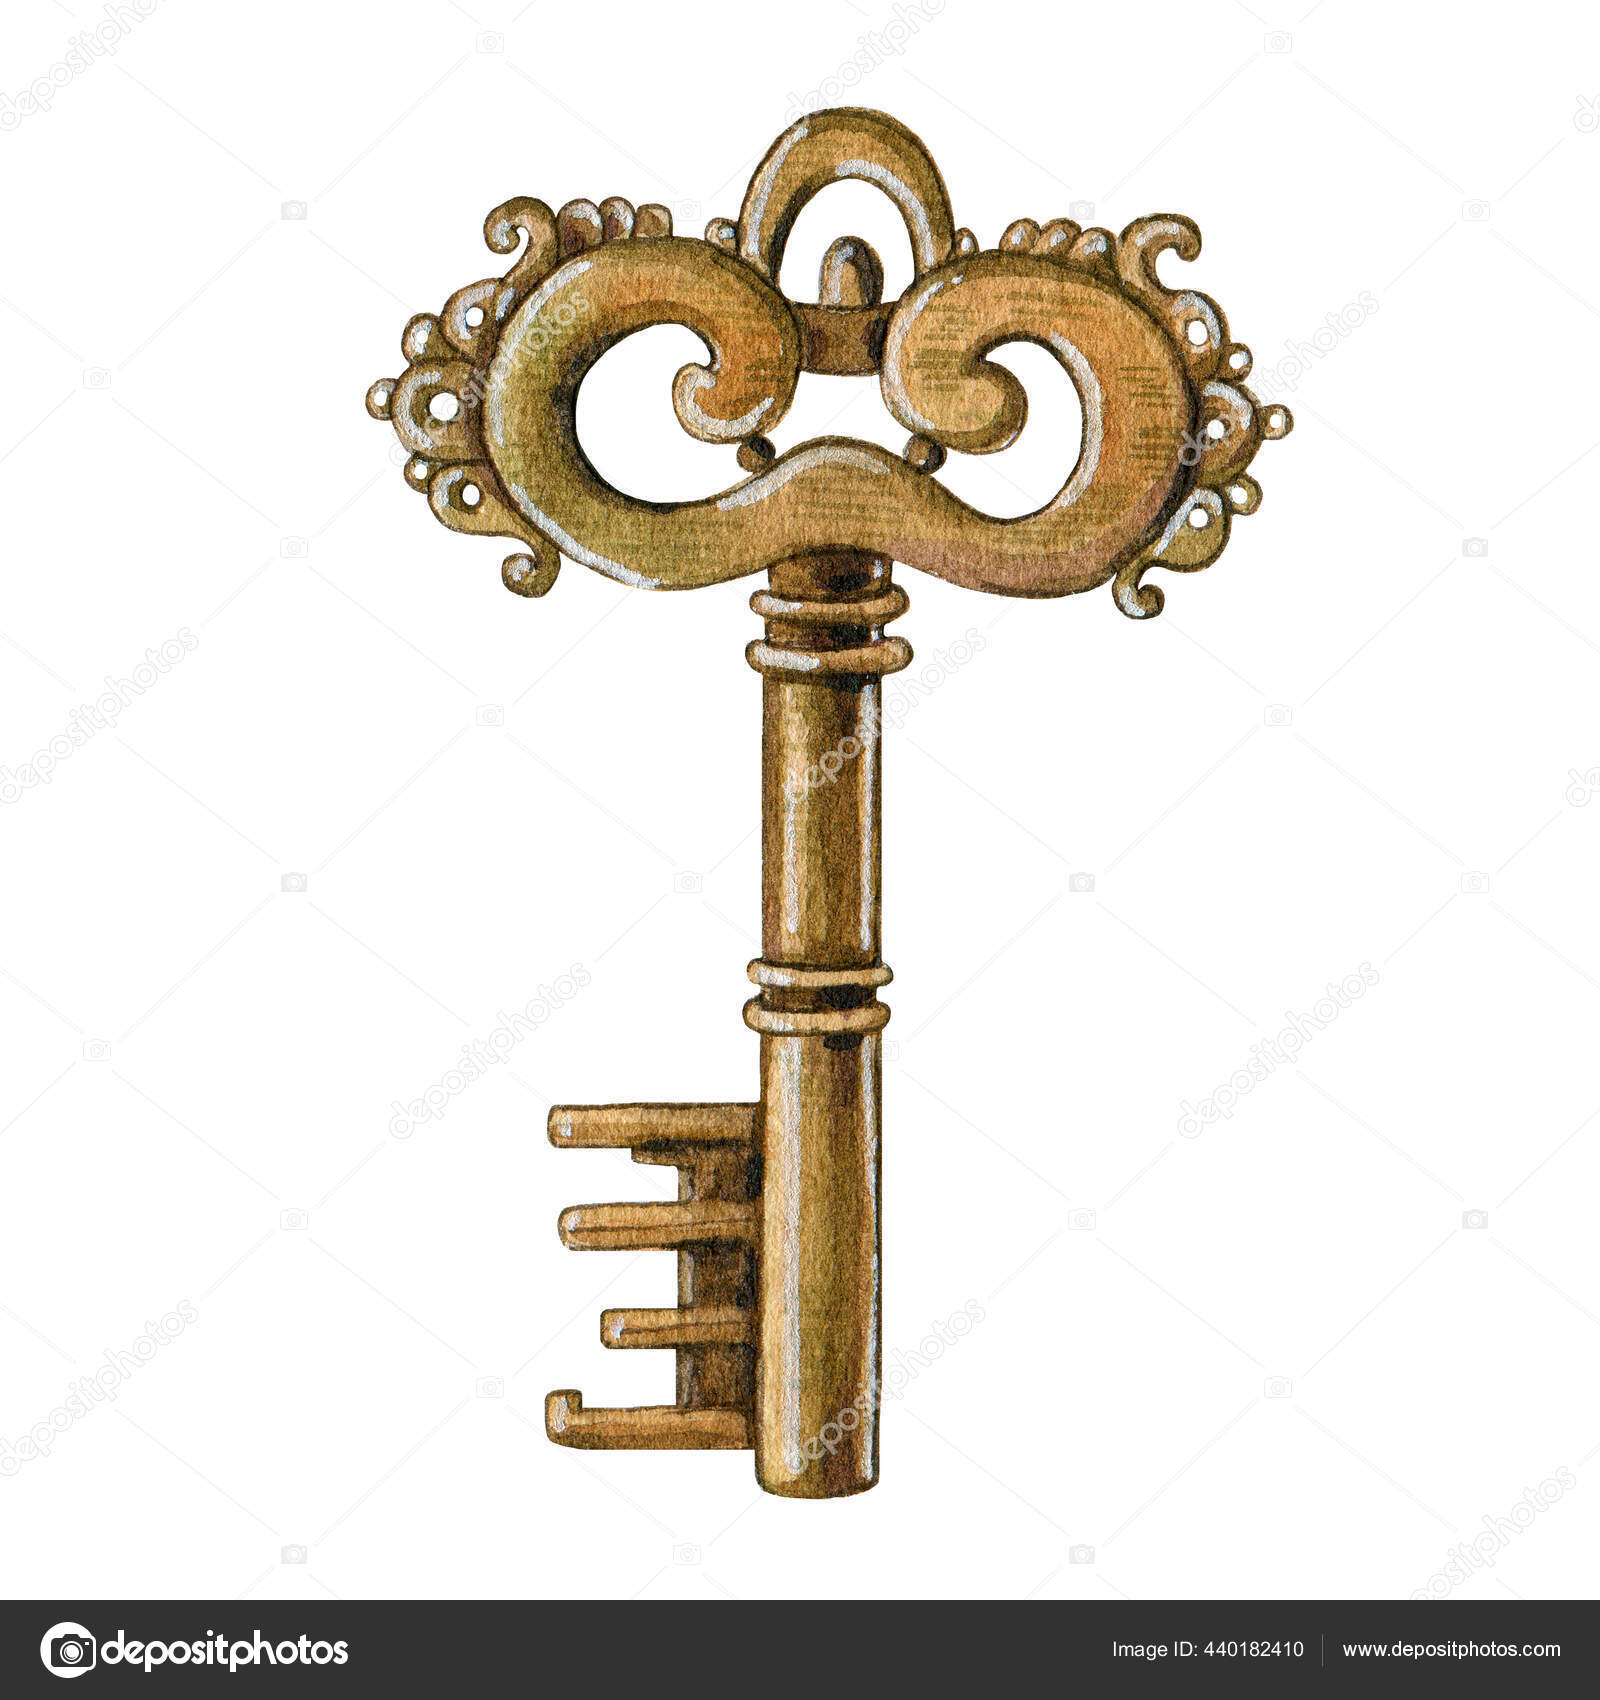 Ilustração em aquarela de uma chave dourada abrindo uma fechadura